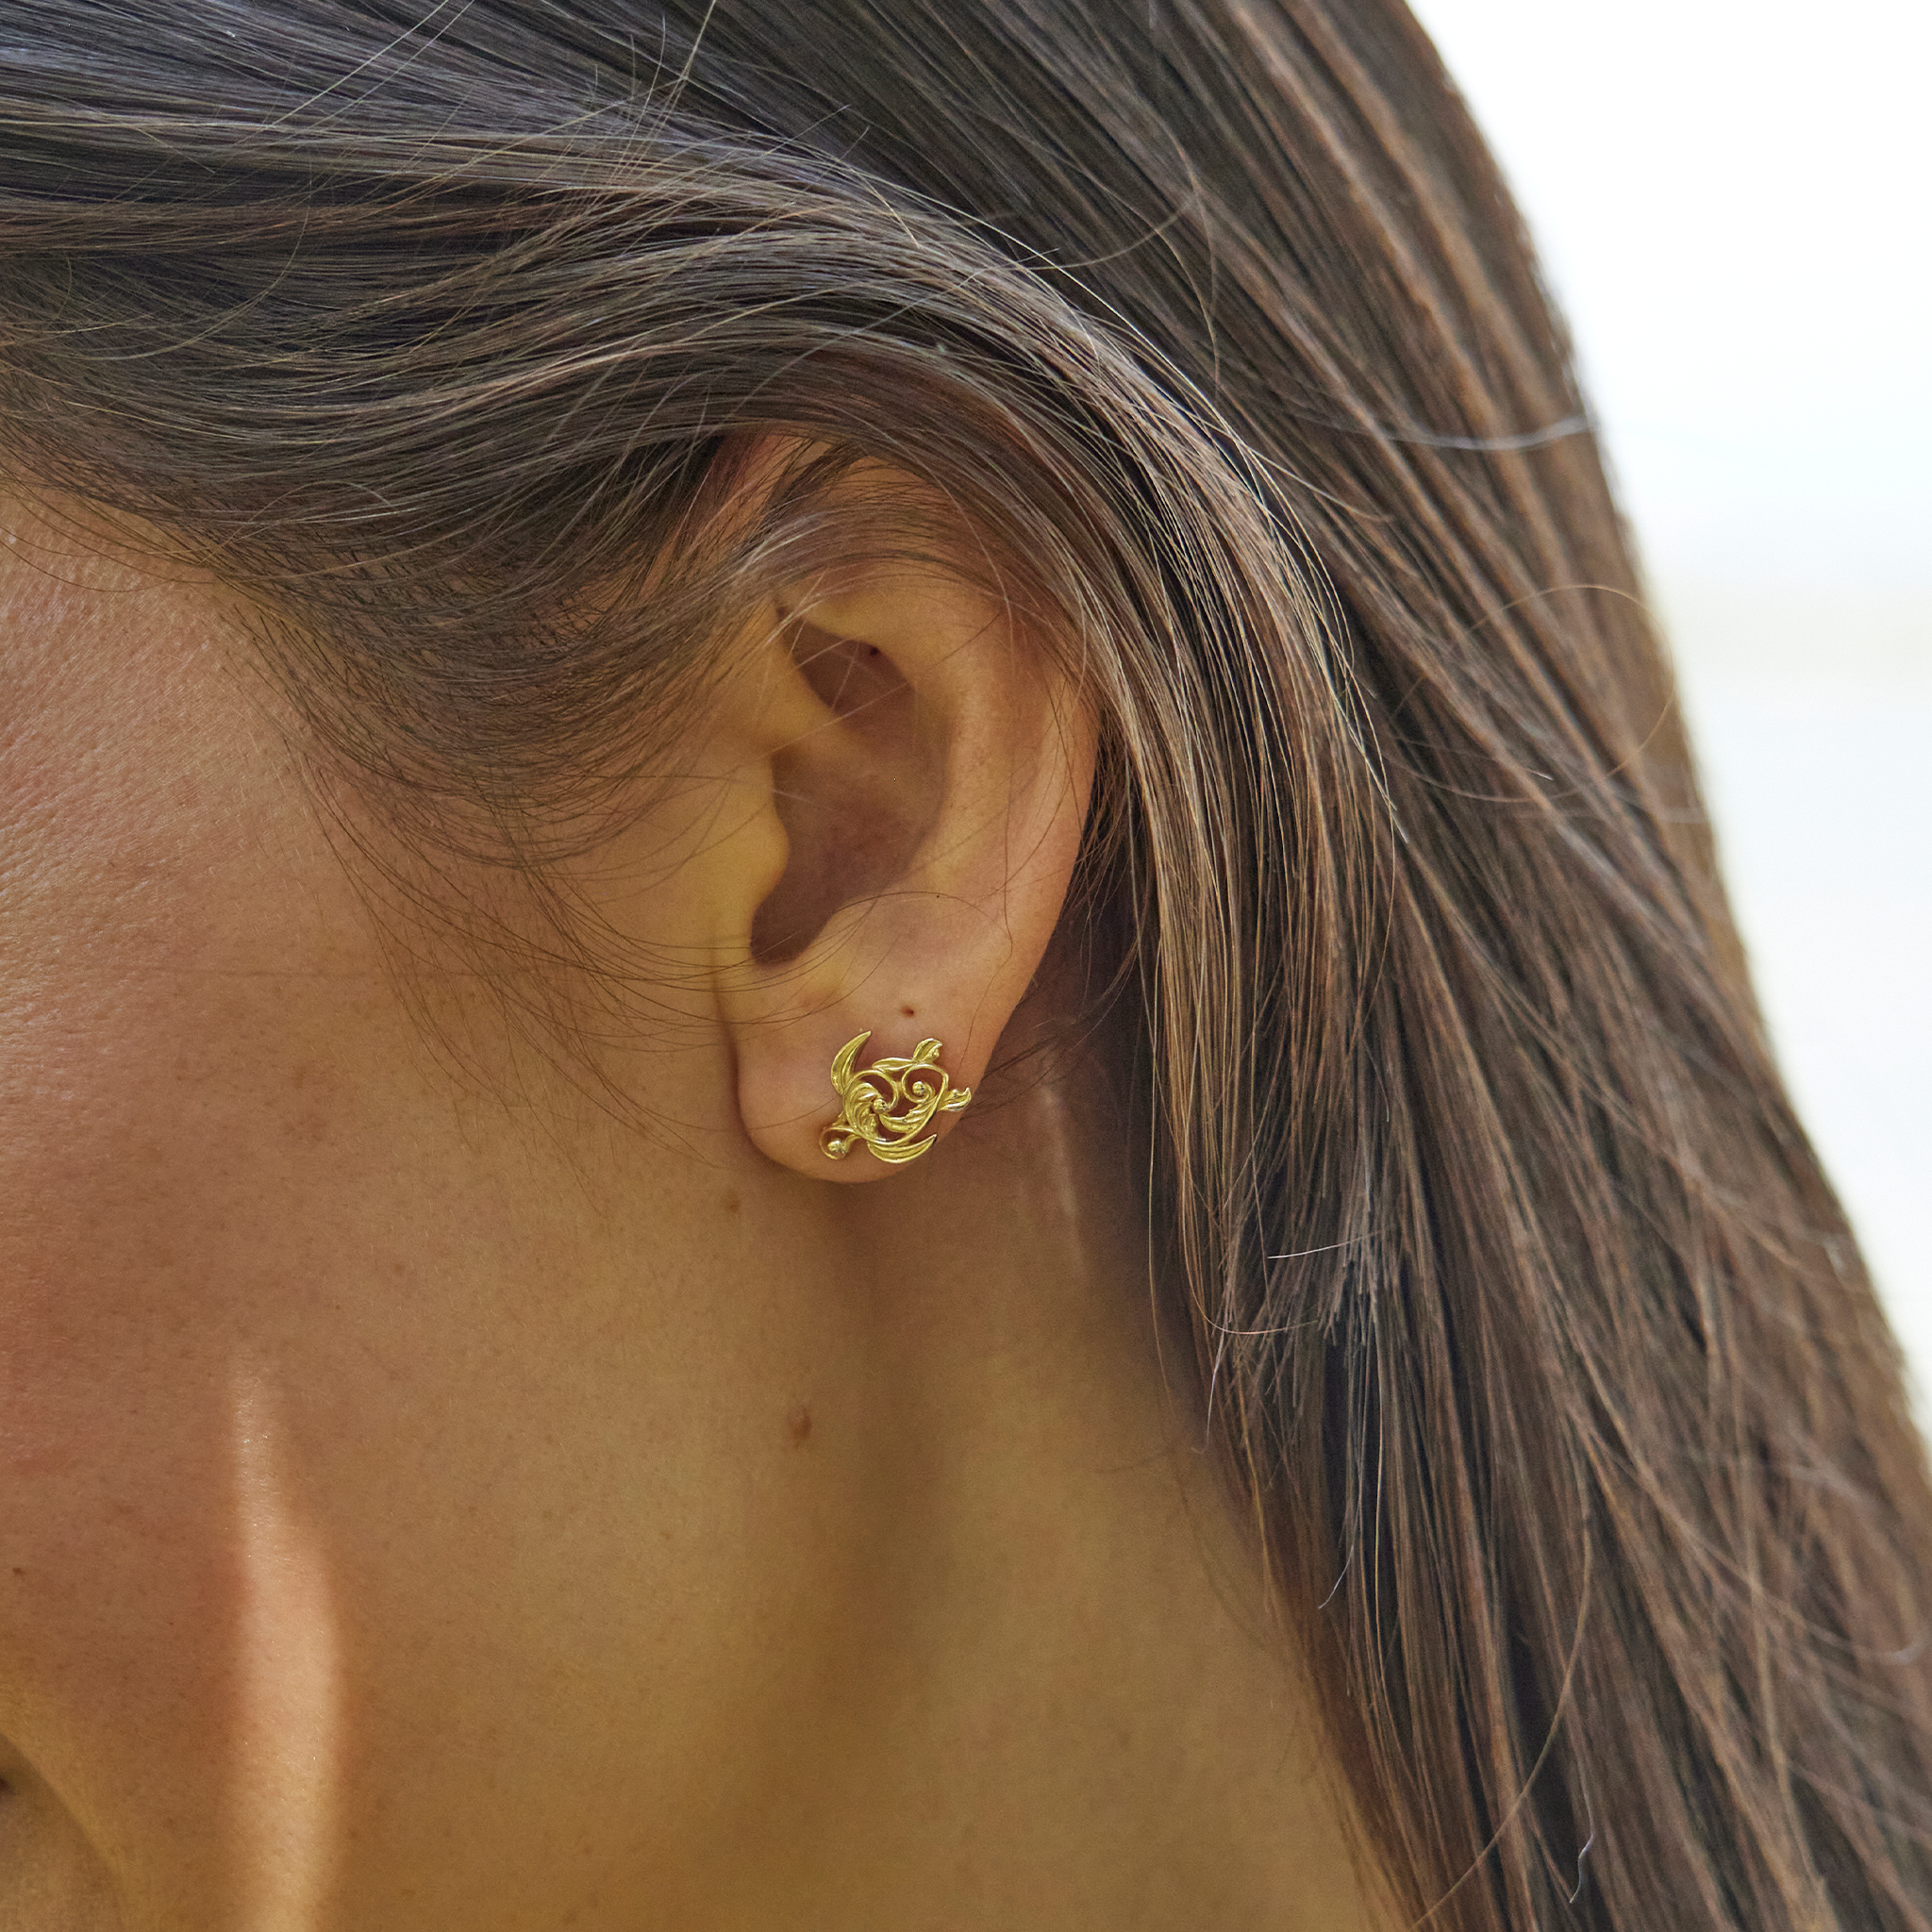 Living Heirloom Honu Earrings in Gold - 13mm